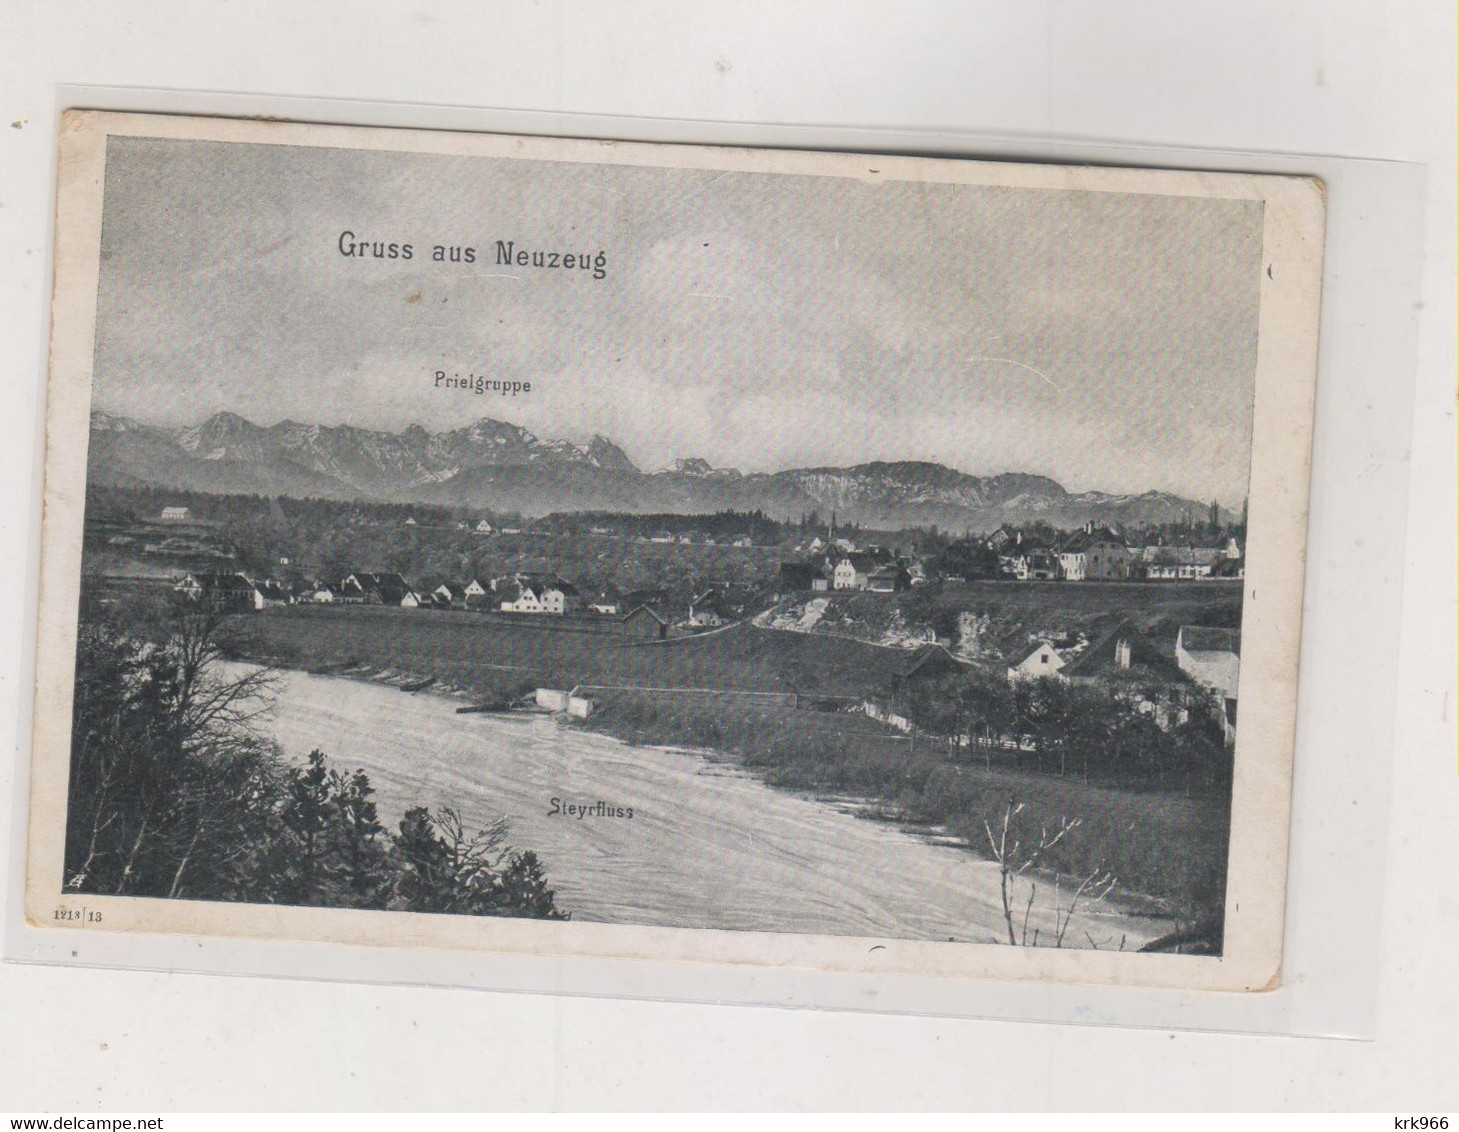 AUSTRIA NEUZEUG Nice Postcard - Sierning